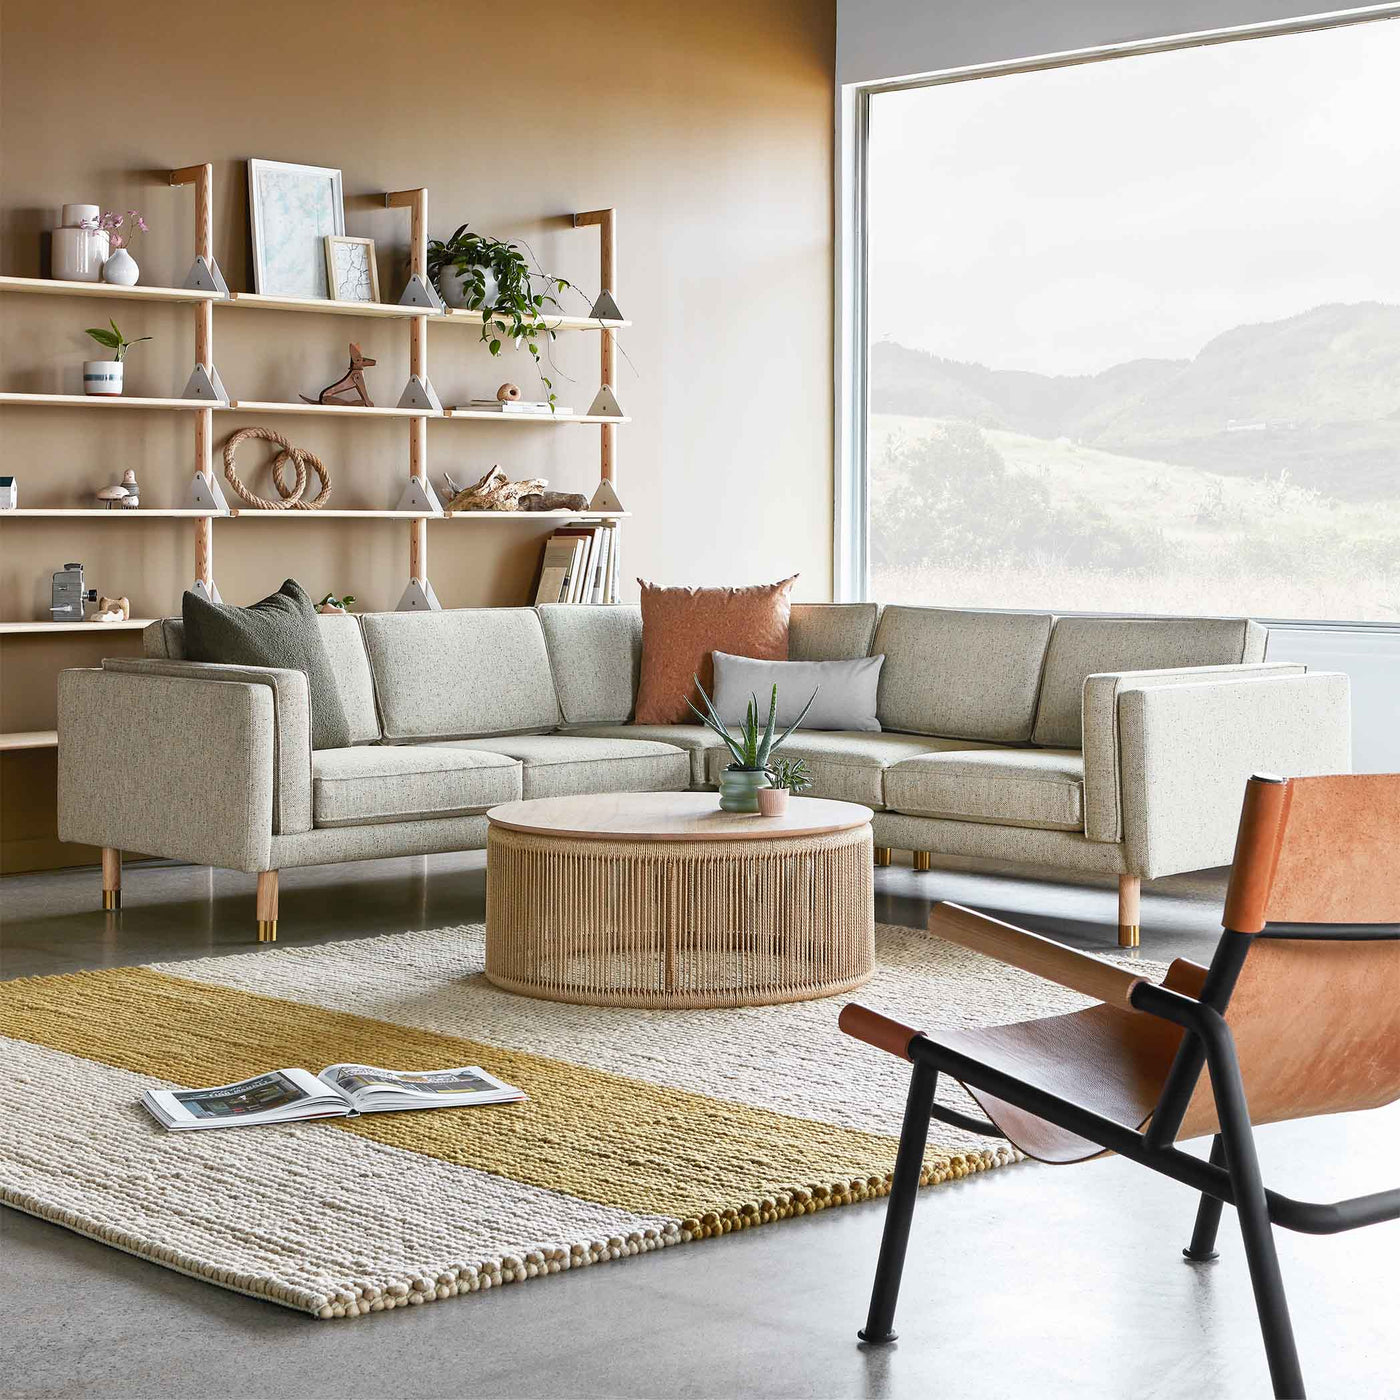 Augusta de Gus* Modern : un sofa bi-sectionnel polyvalent et confortable, mariant modernisme classique et tendances Mid-century, avec des détails raffinés et des matériaux durables.